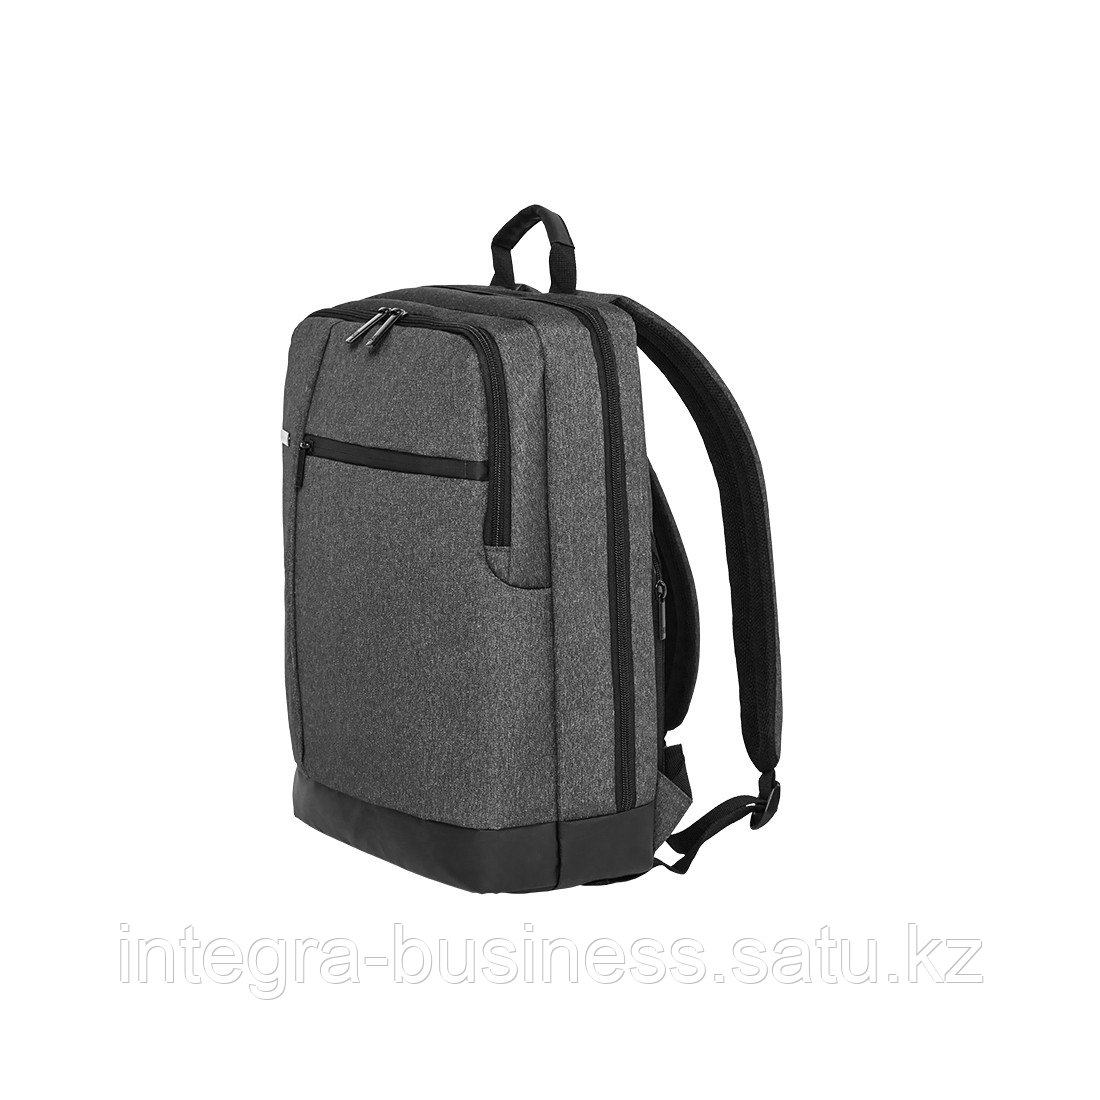 Рюкзак NINETYGO Classic Business Backpack Темно-серый, фото 1